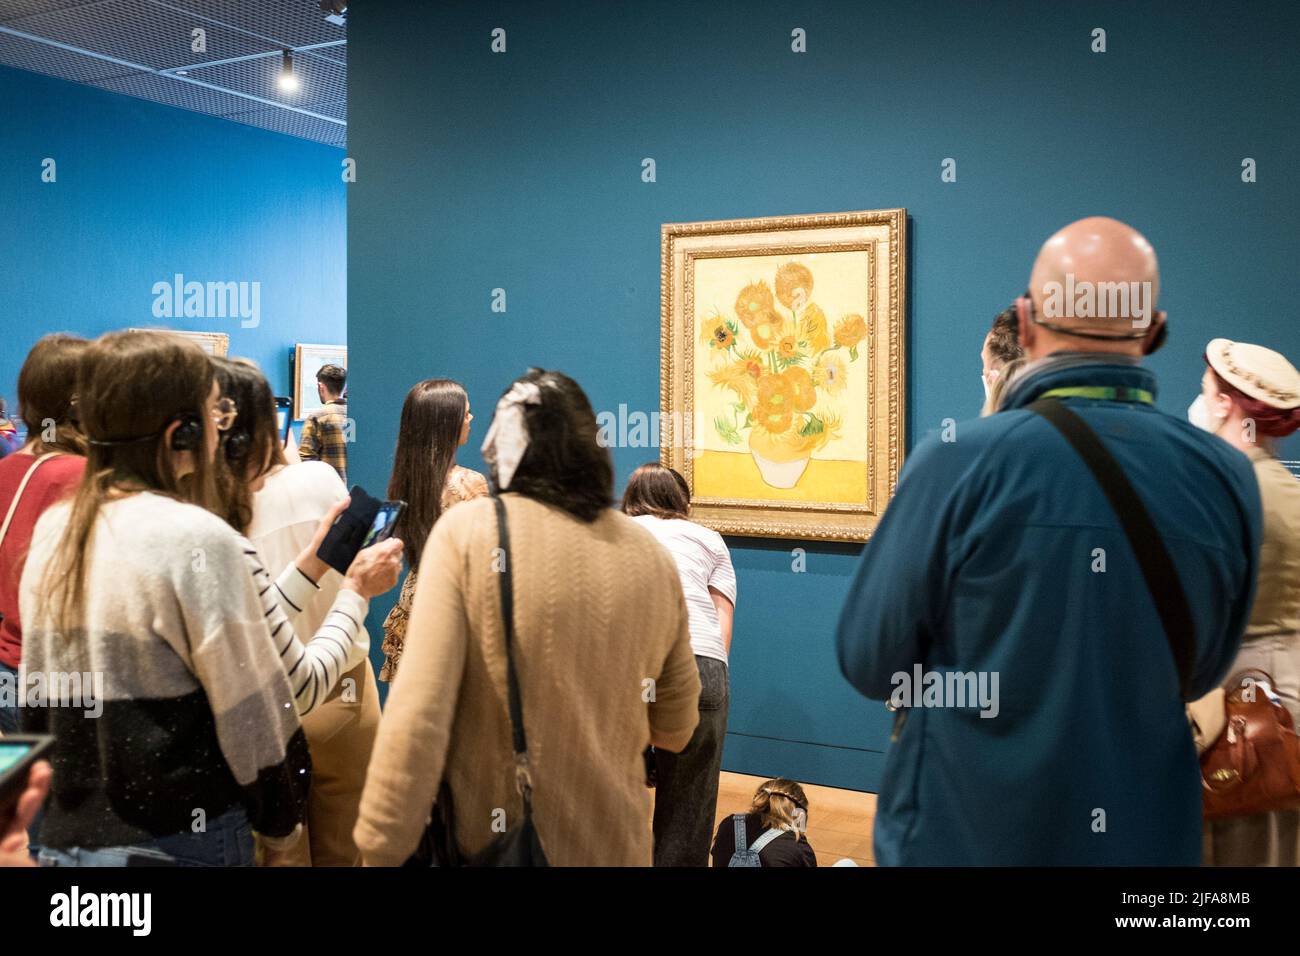 Les visiteurs admirent la peinture, tournesol, de Vincent Van Gogh dans le musée Van Gogh d'Amsterdam, pays-Bas Banque D'Images